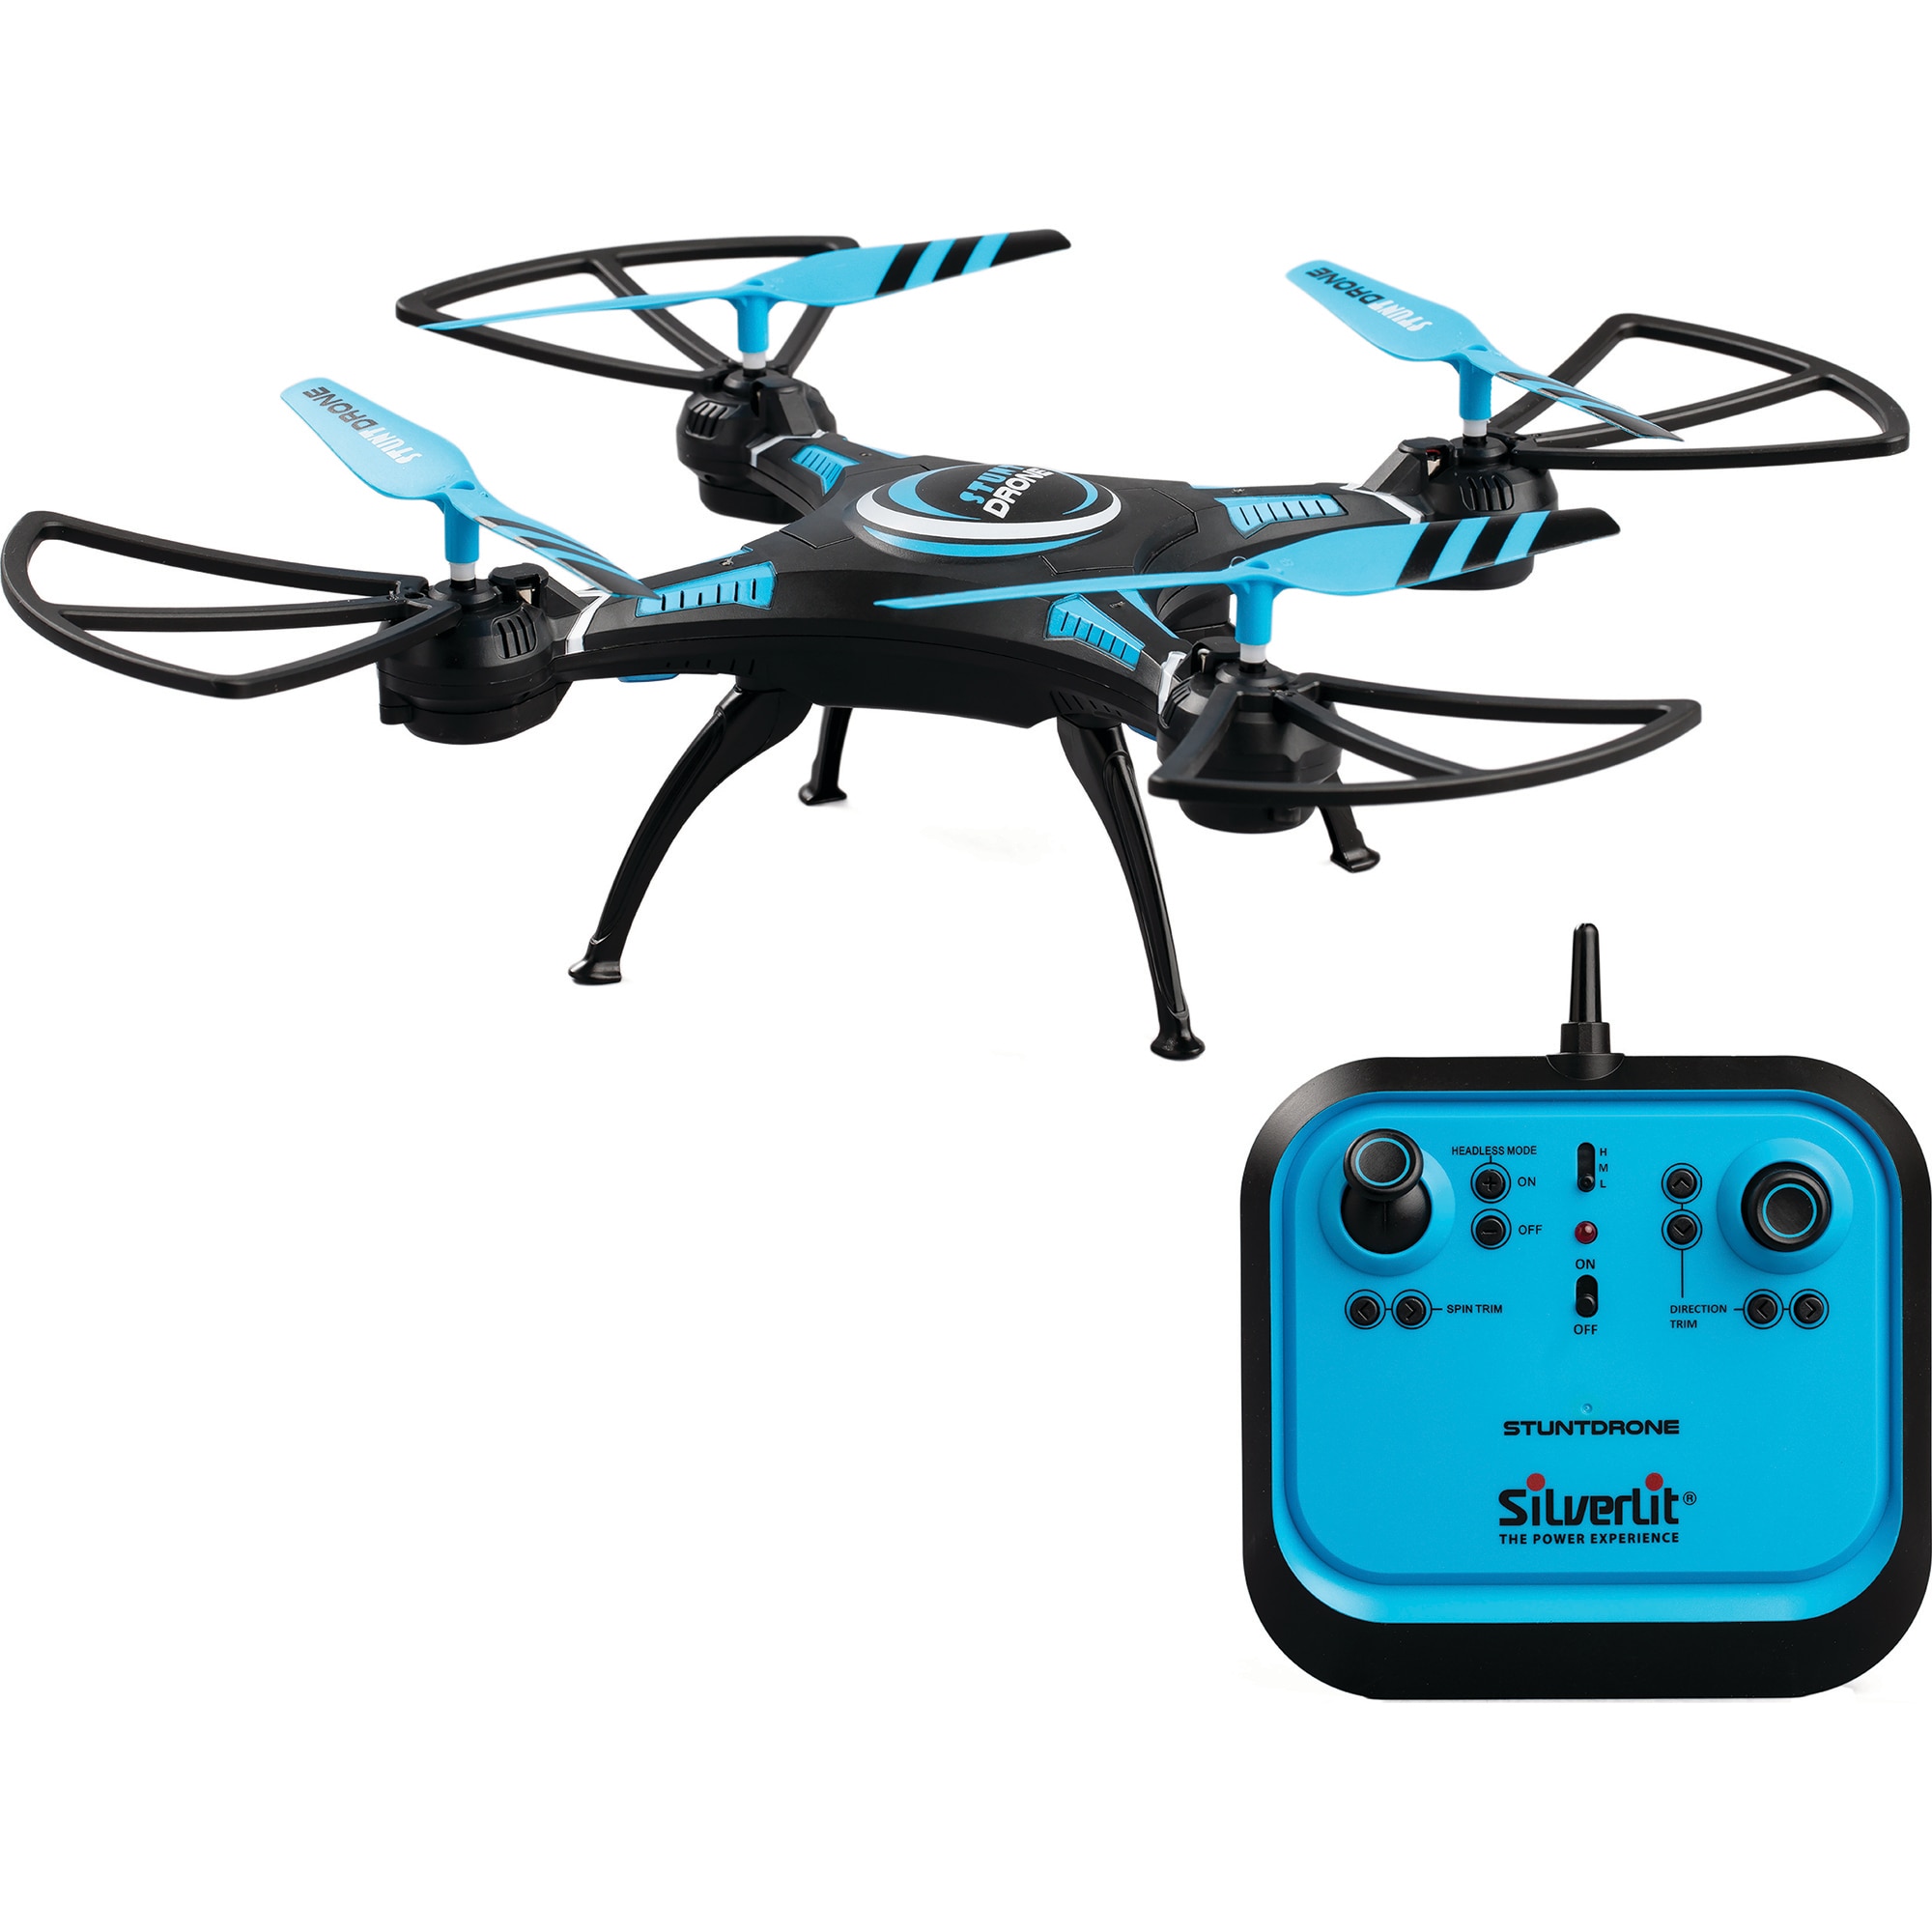 Stunt Drone – Silverlit